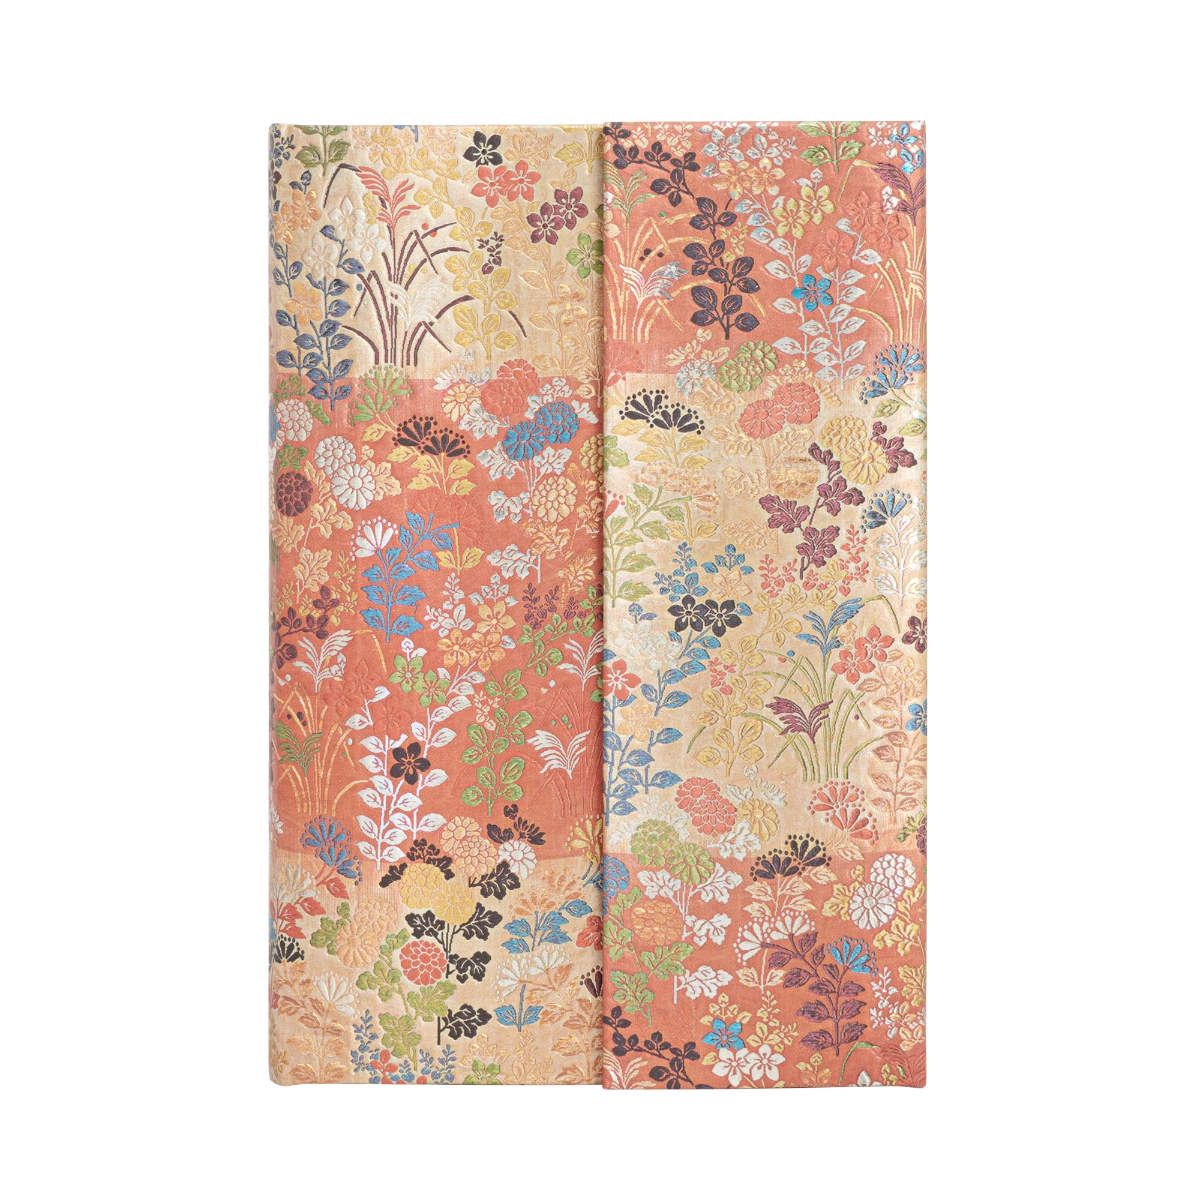 Paperblanks Kara-ori, Japanese Kimono Mini 3.75 x 5.5 Inches Journal